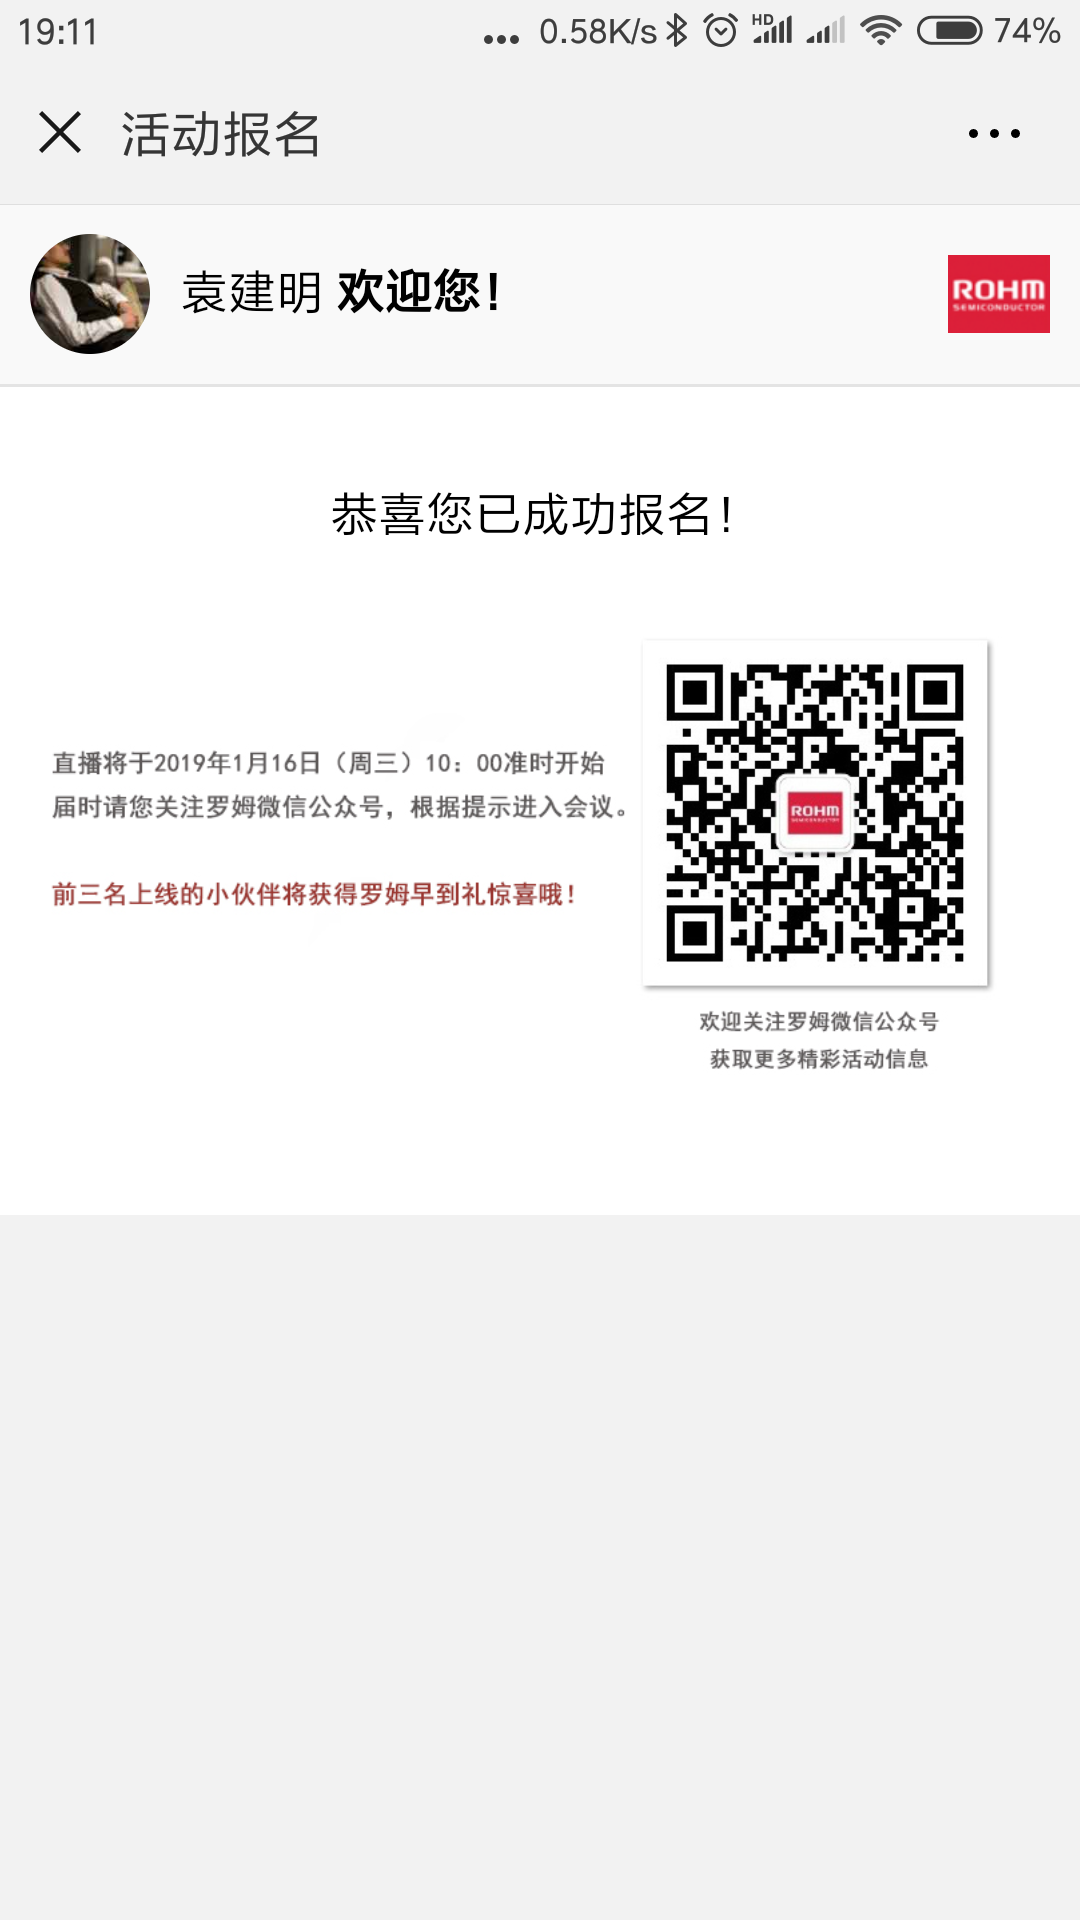 Screenshot_2018-12-18-19-11-31-996_com.tencent.mm.png